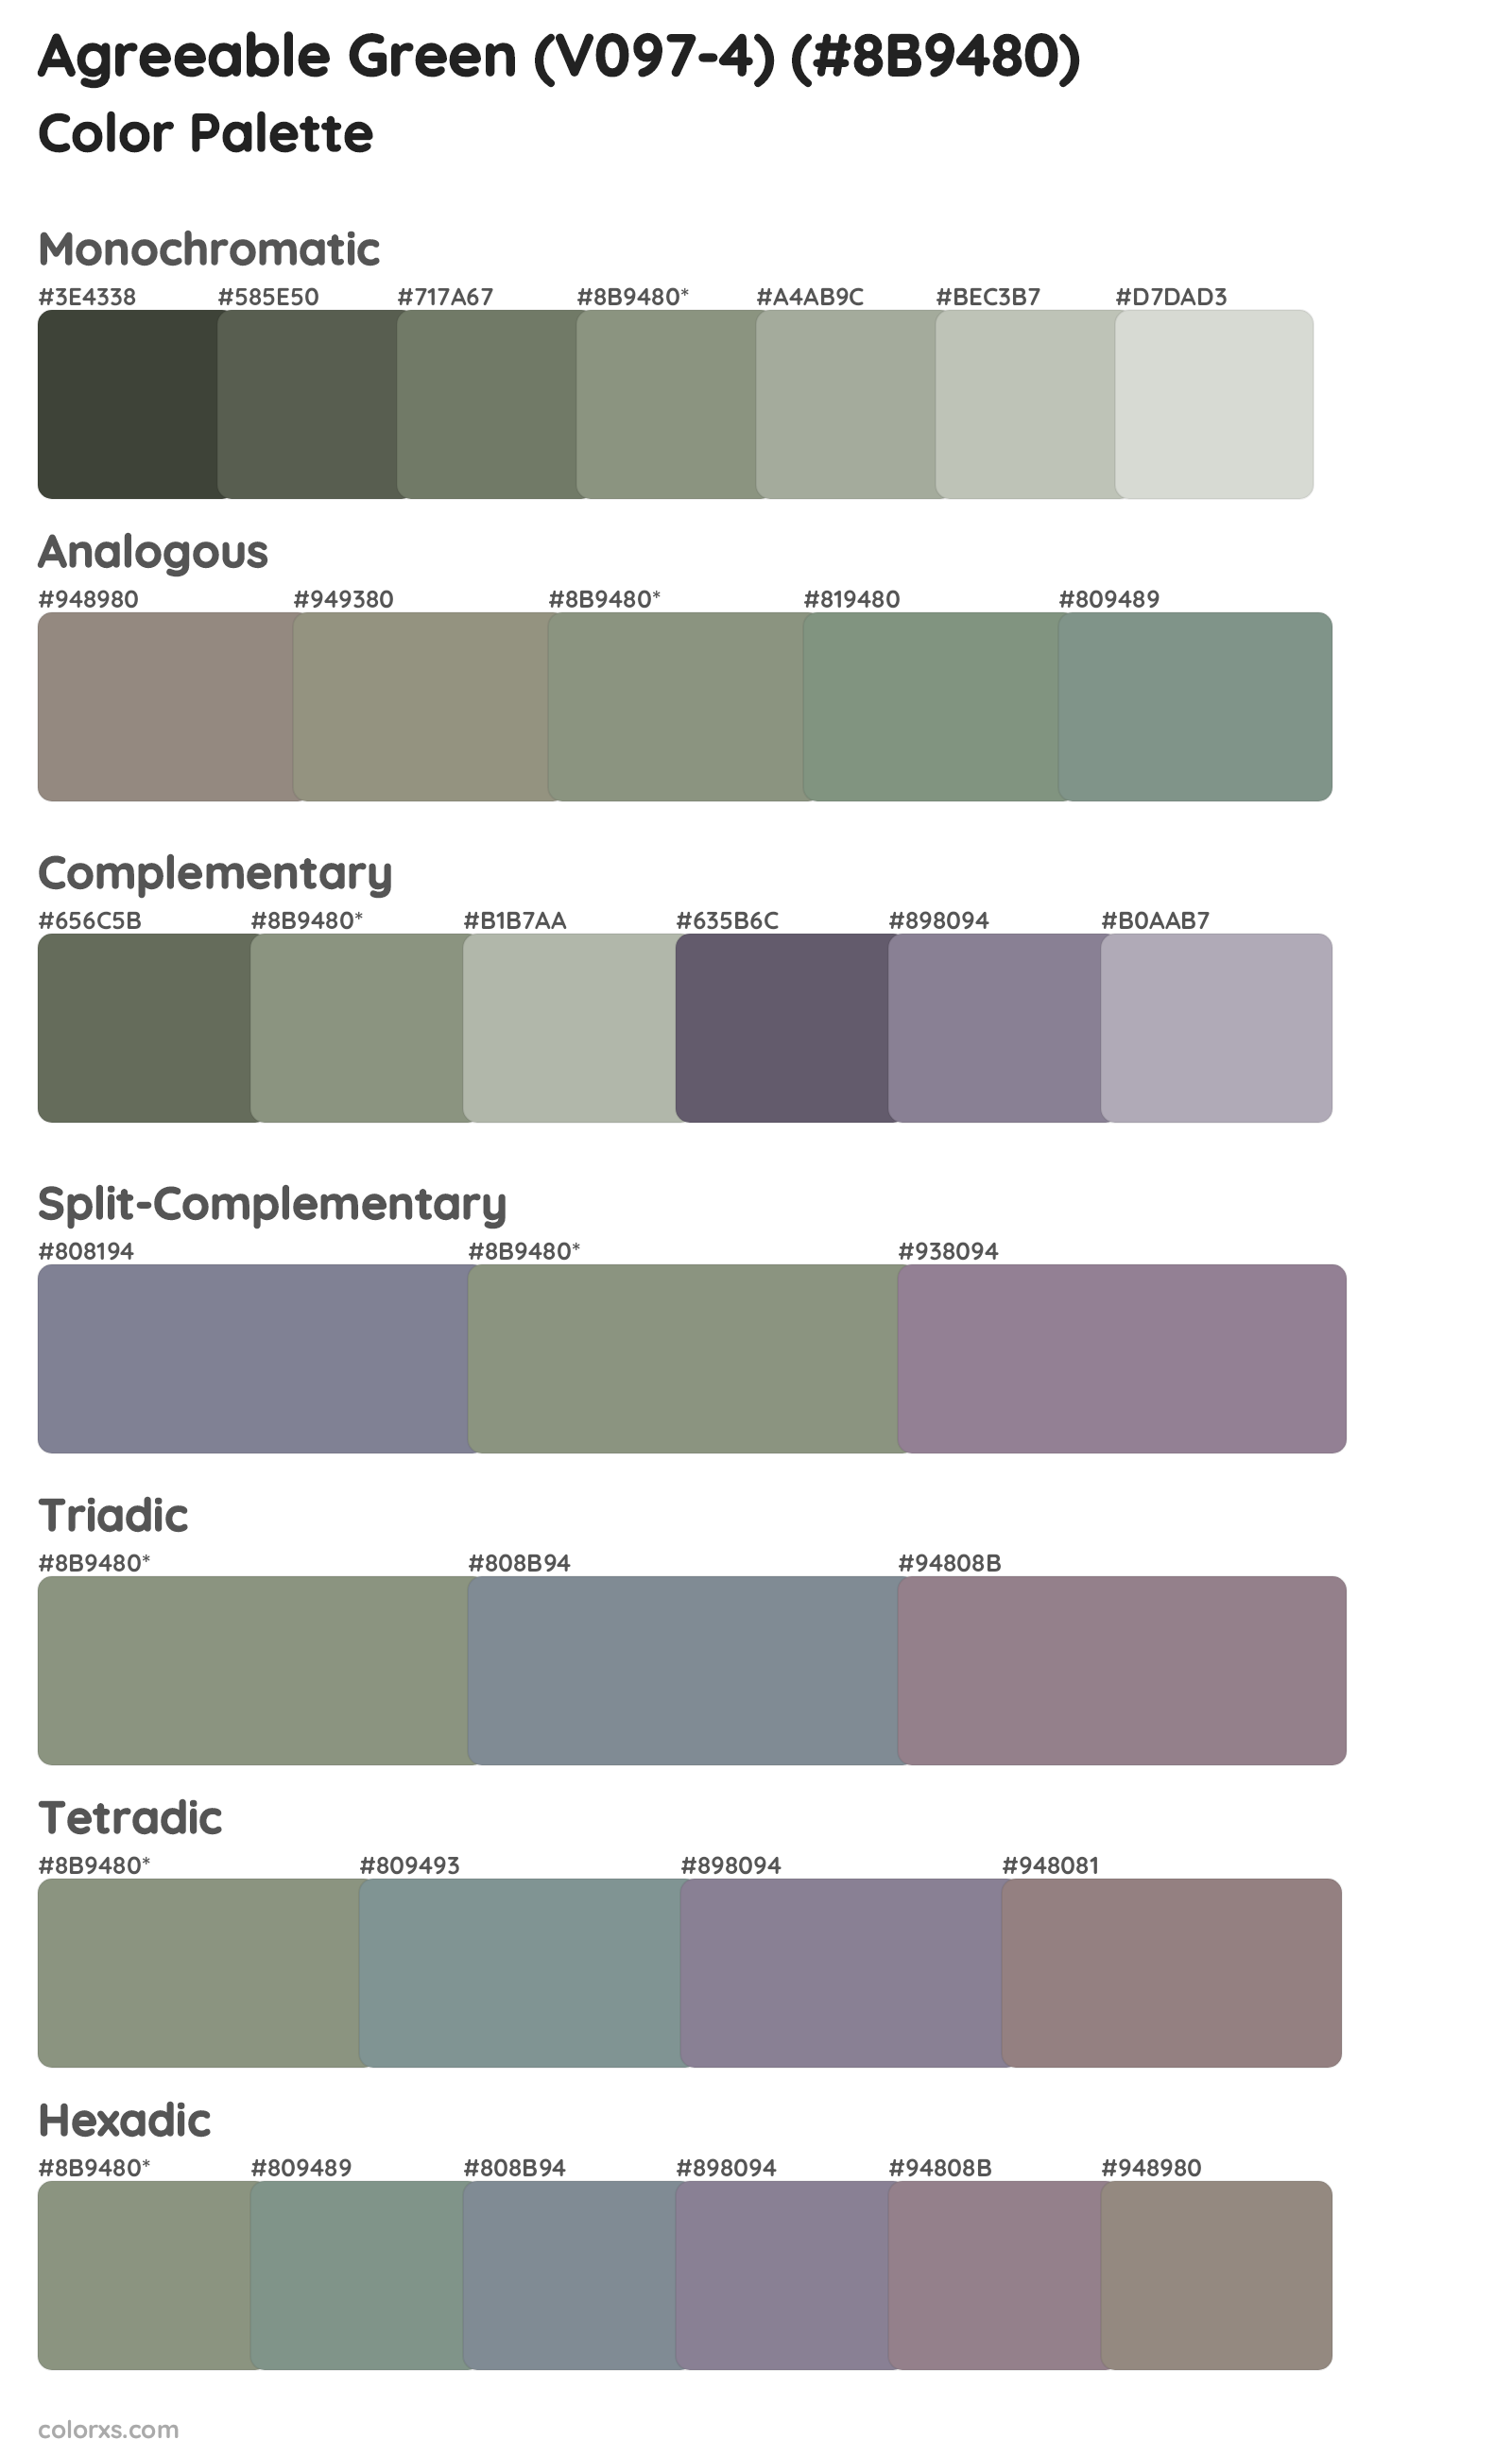 Agreeable Green (V097-4) Color Scheme Palettes